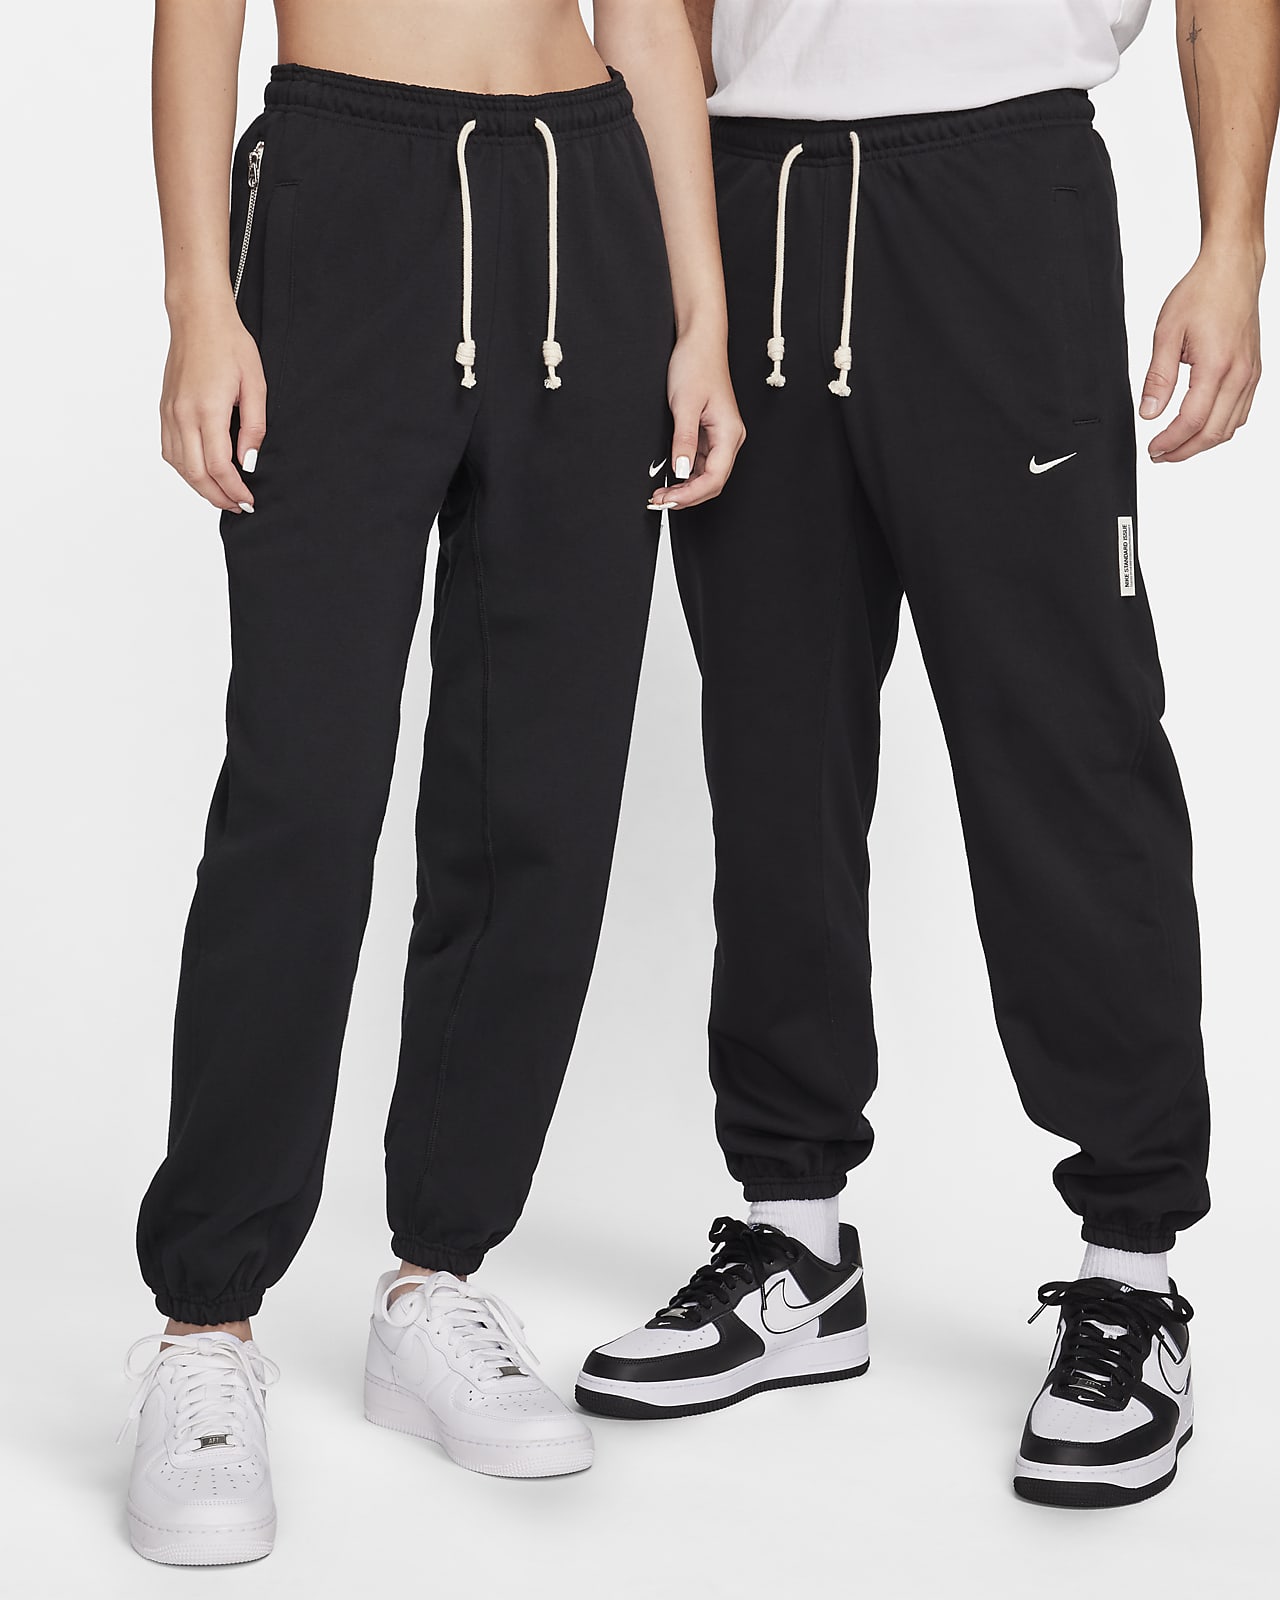 Nike Dri-FIT Standard Issue 男子速干舒爽篮球长裤